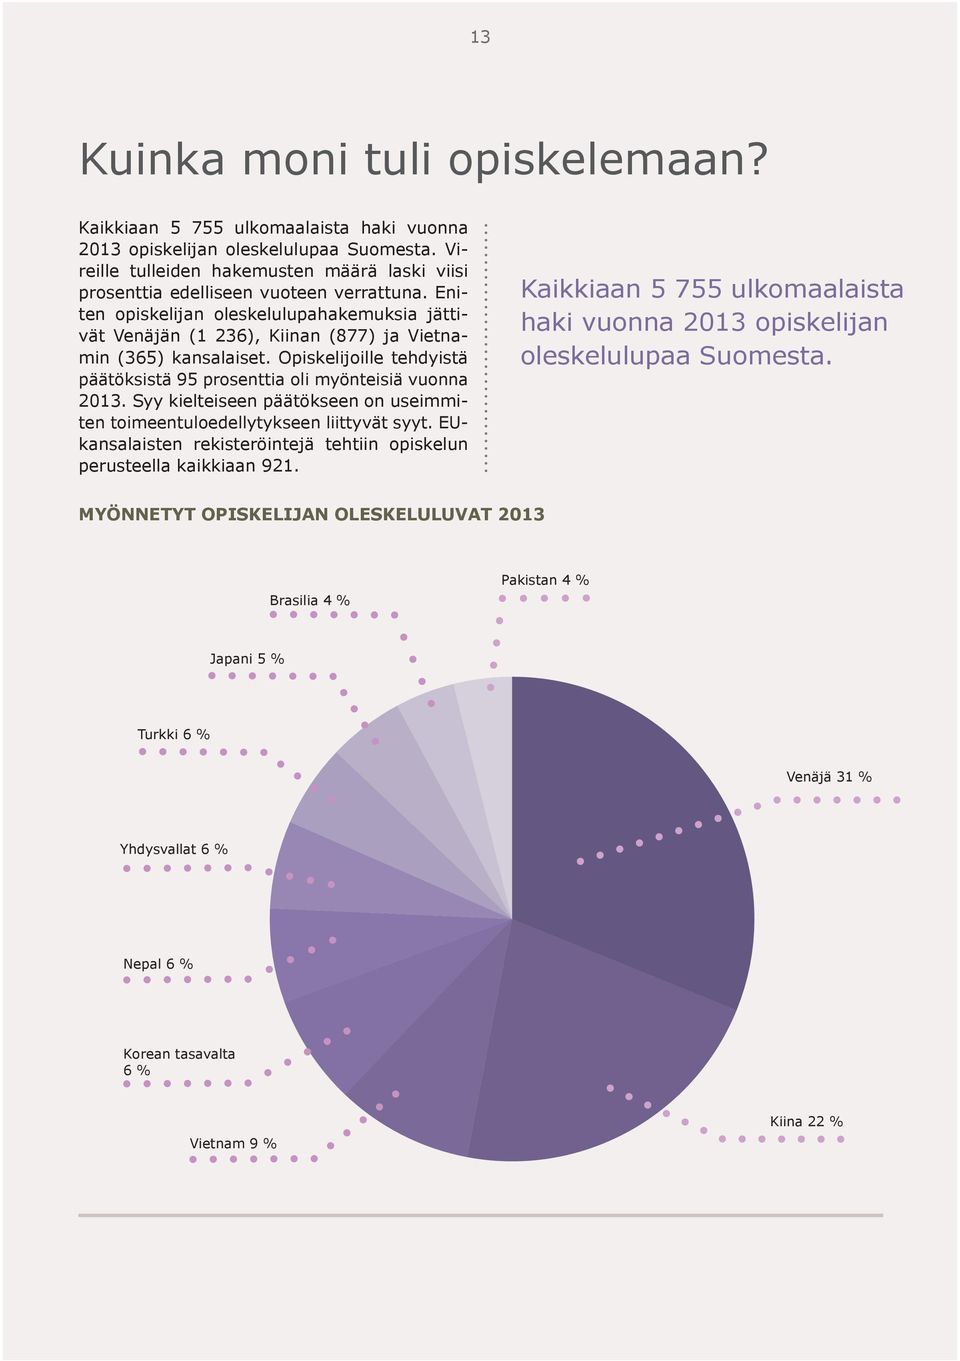 Eniten opiskelijan oleskelulupahakemuksia jättivät Venäjän (1 236), Kiinan (877) ja Vietnamin (365) kansalaiset. Opiskelijoille tehdyistä päätöksistä 95 prosenttia oli myönteisiä vuonna 2013.